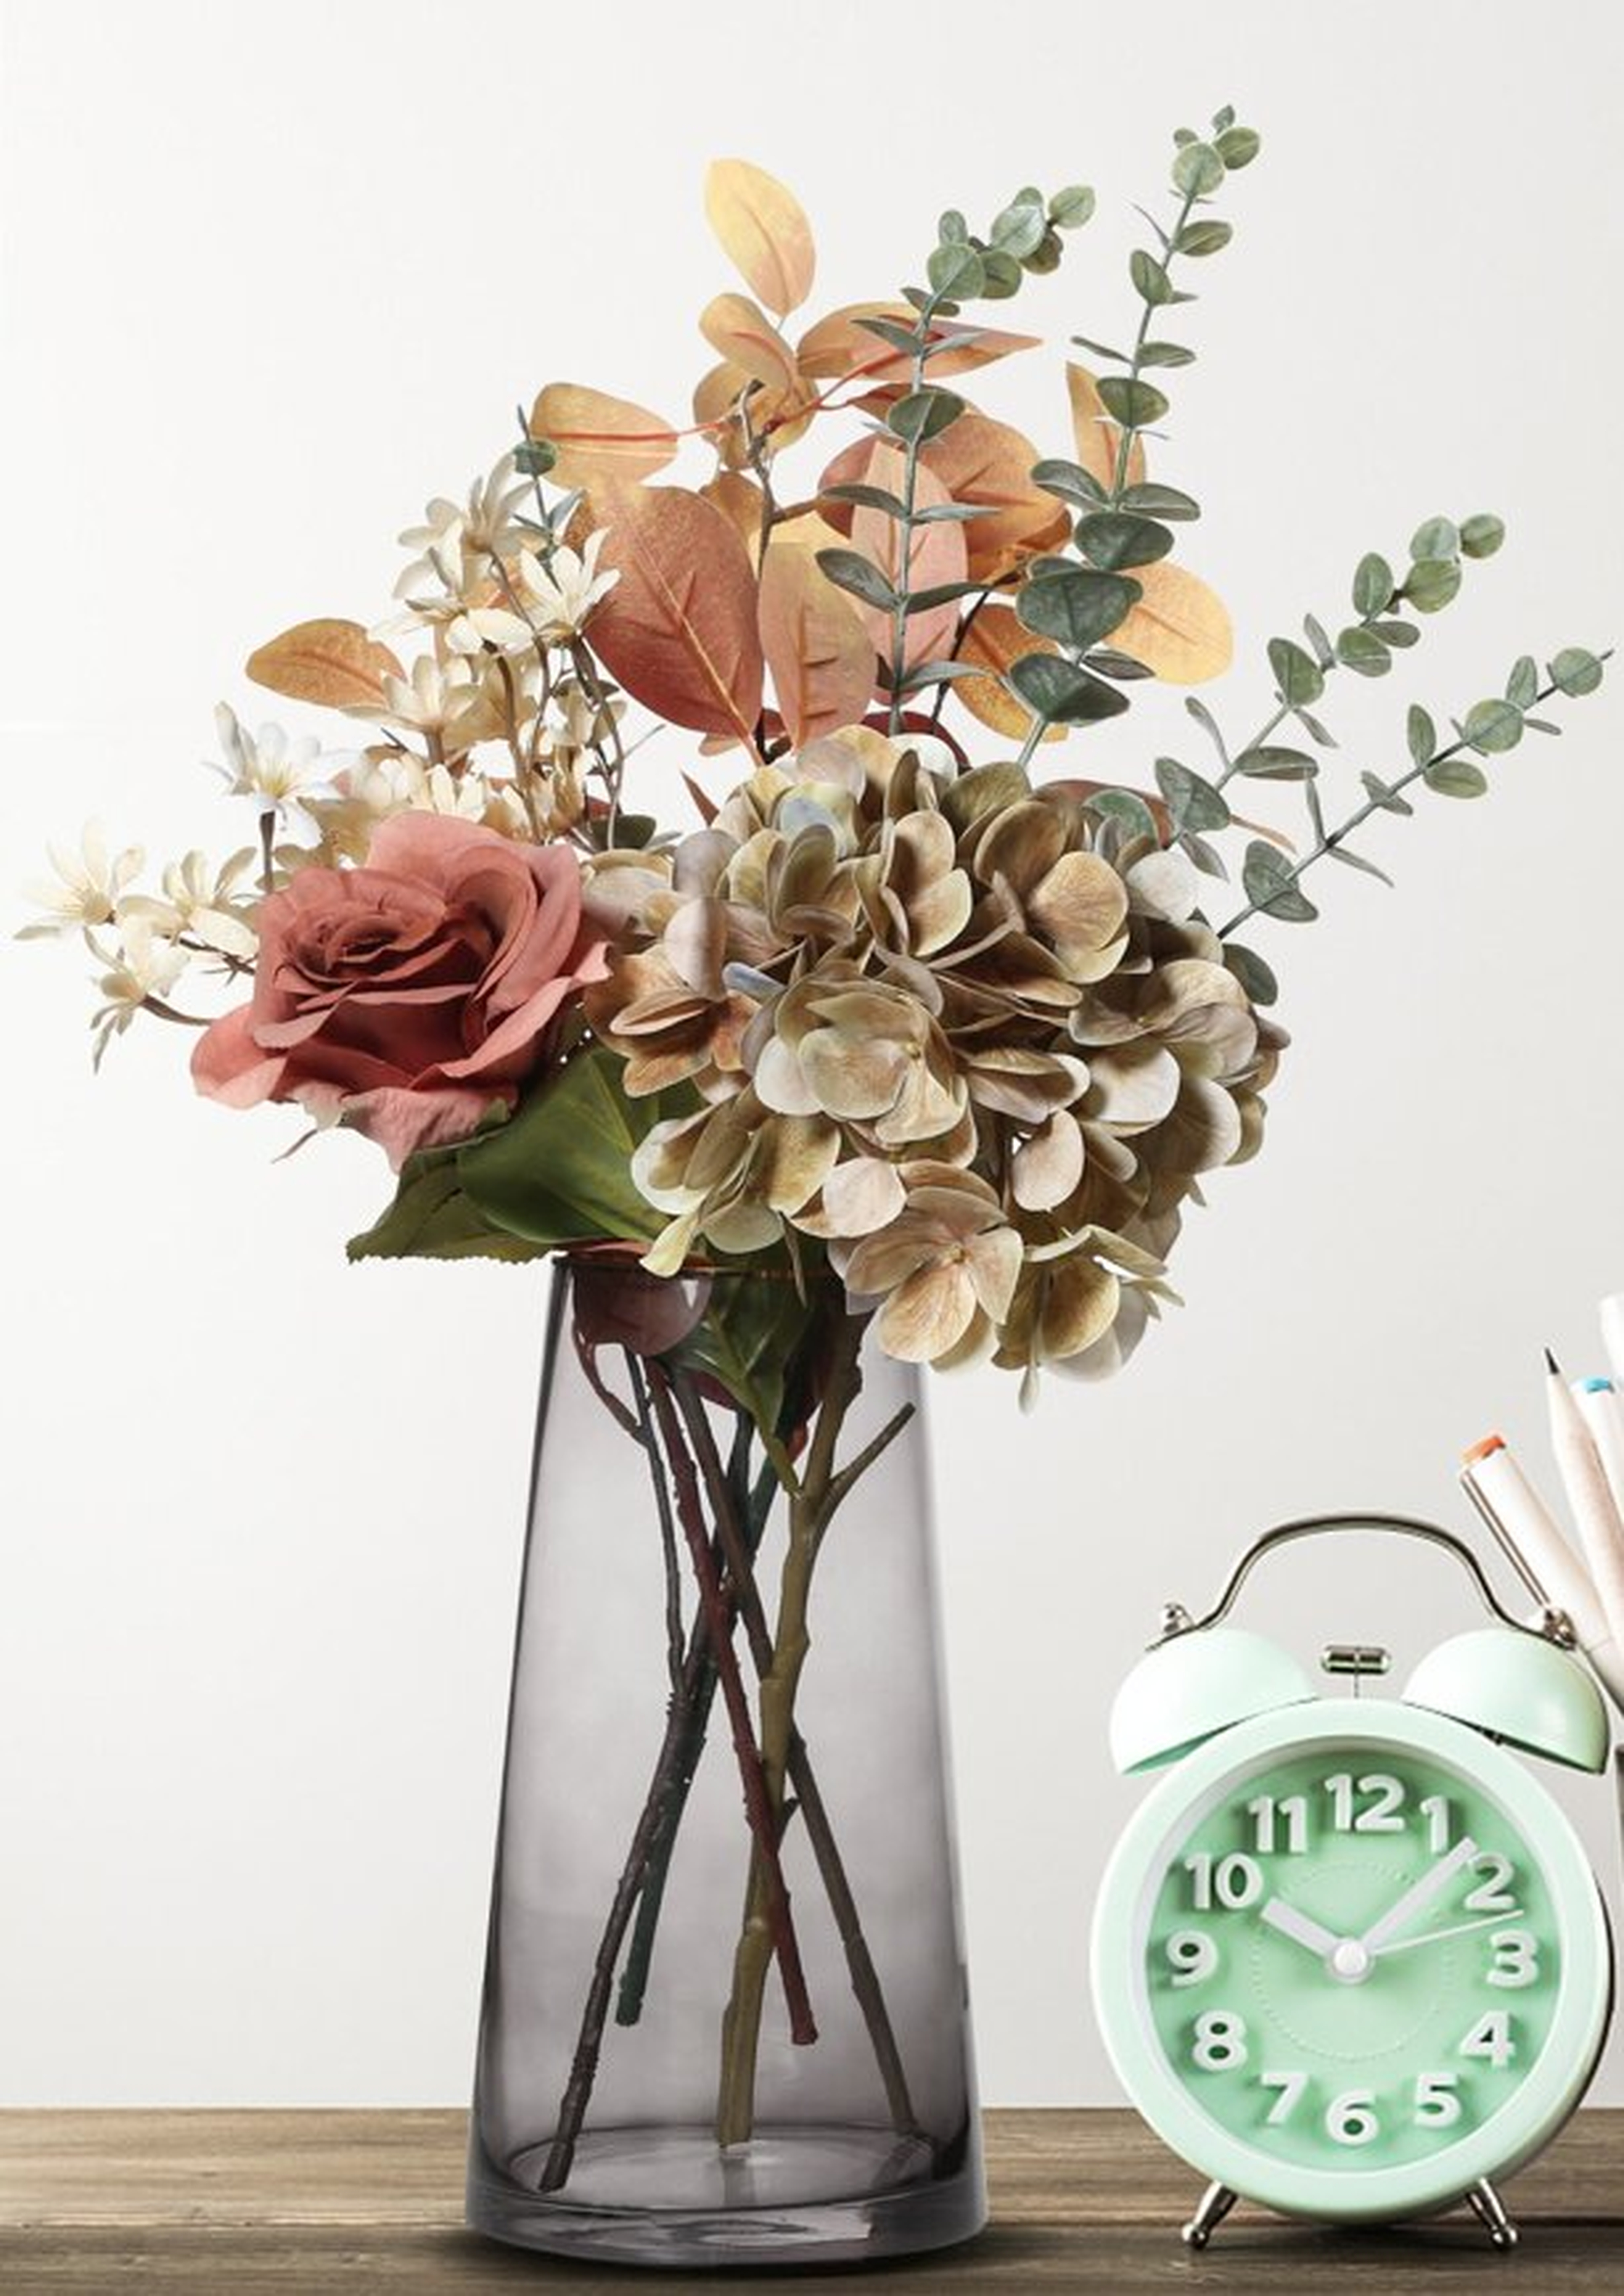 Mixed Floral Arrangement in Vase - Wayfair